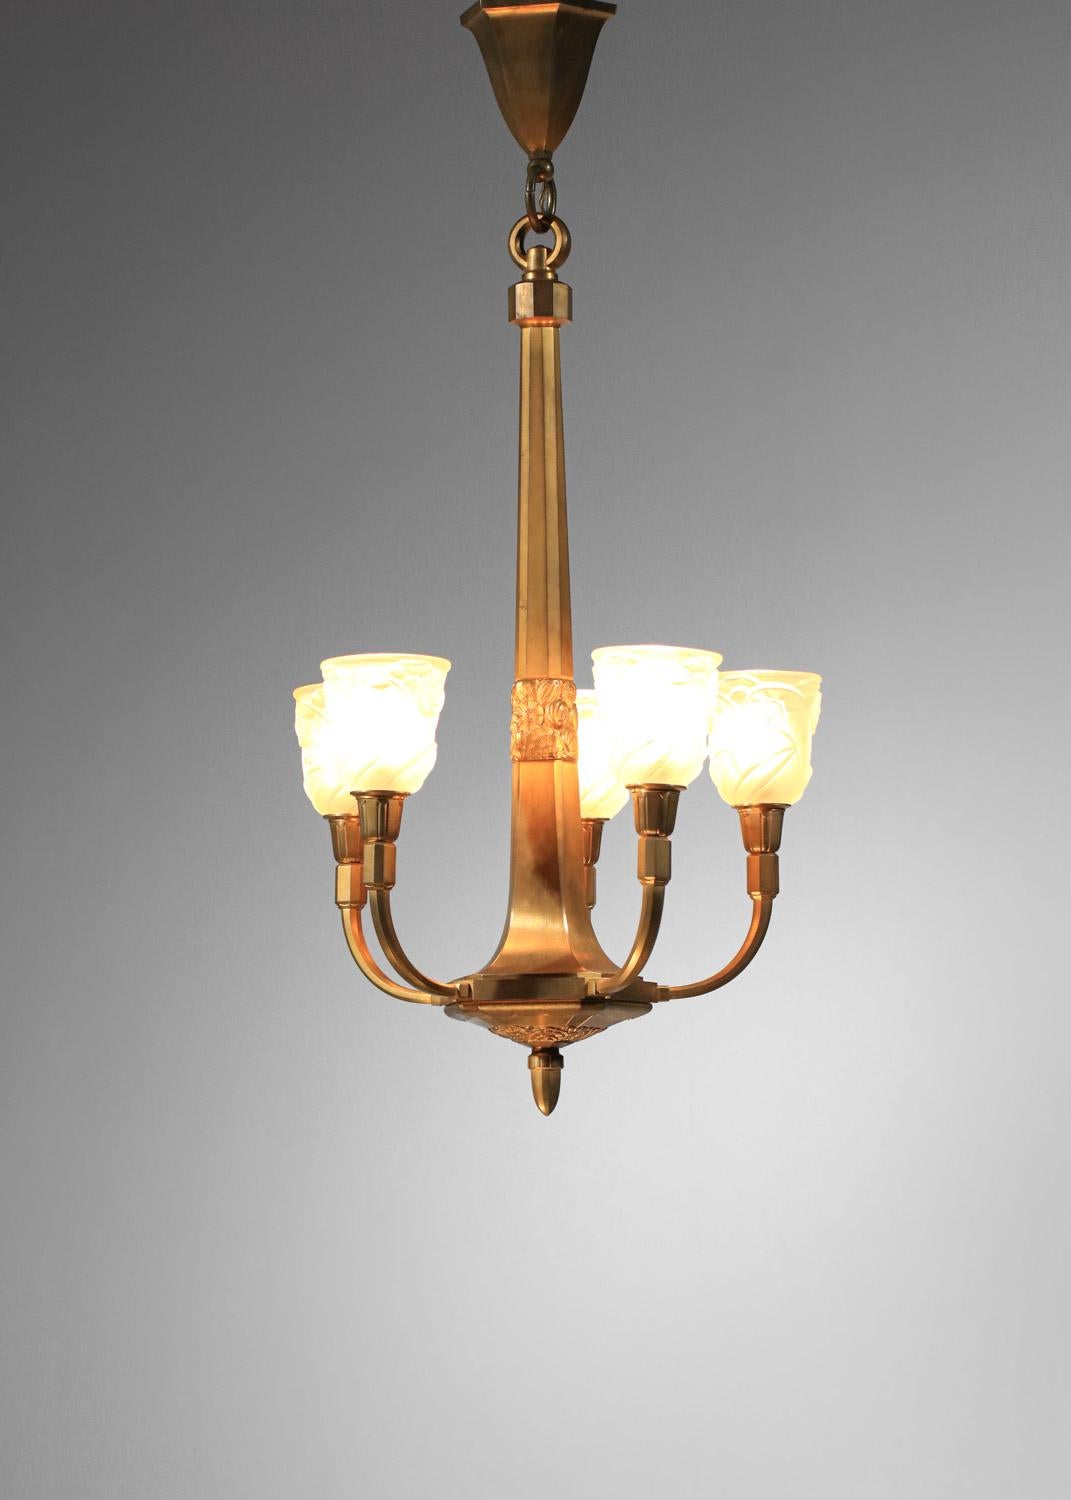 rare gilded bronze art deco chandelier signed J.Coduré Lyon 1930s art nouveau  For Sale 11